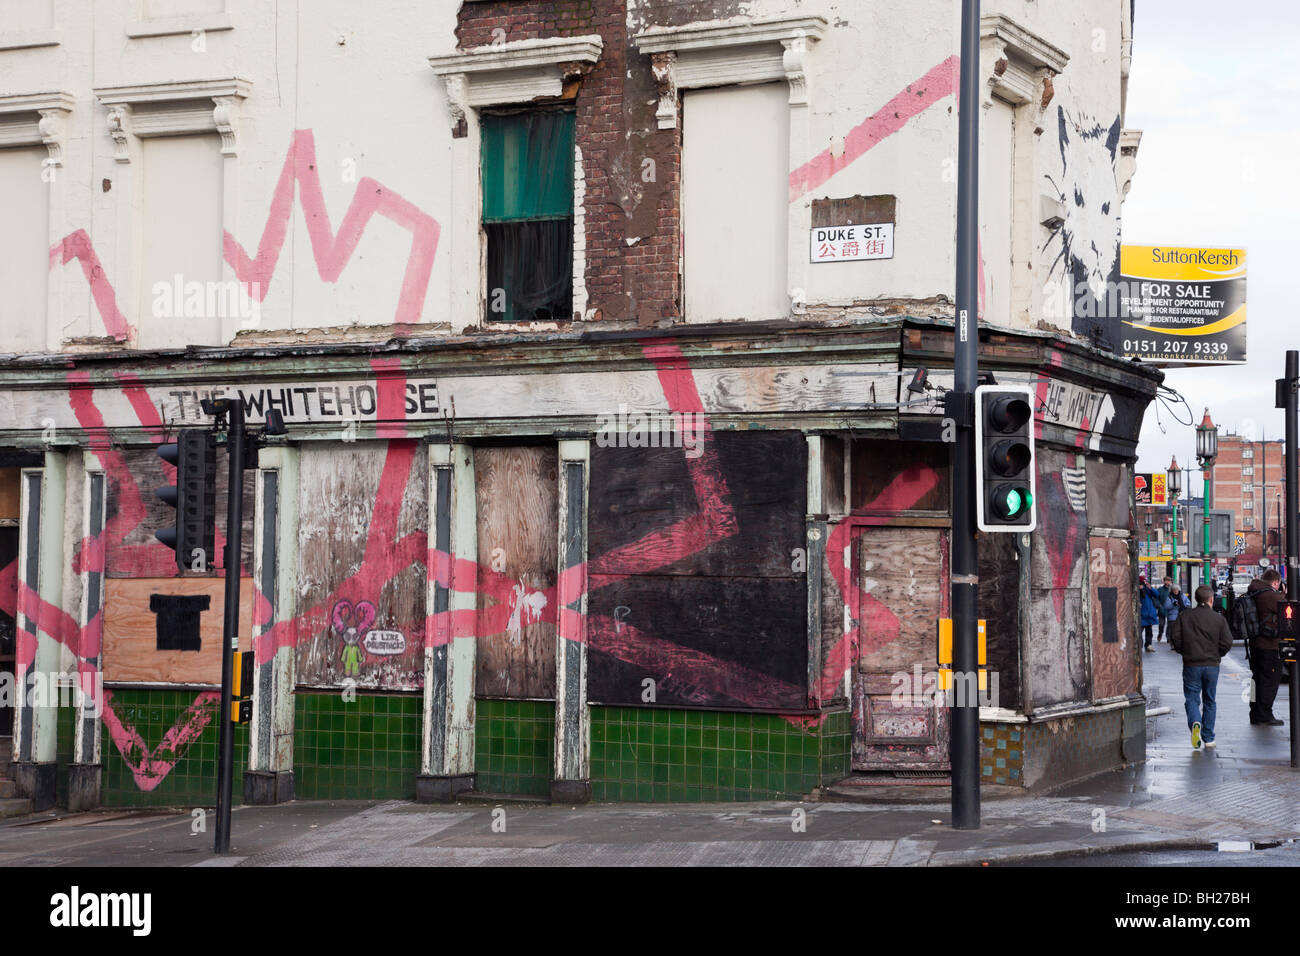 Abbandonati pub urbano chiuso in vendita per la riqualificazione. Duke Street, Liverpool, Merseyside England, Regno Unito, Gran Bretagna. Foto Stock